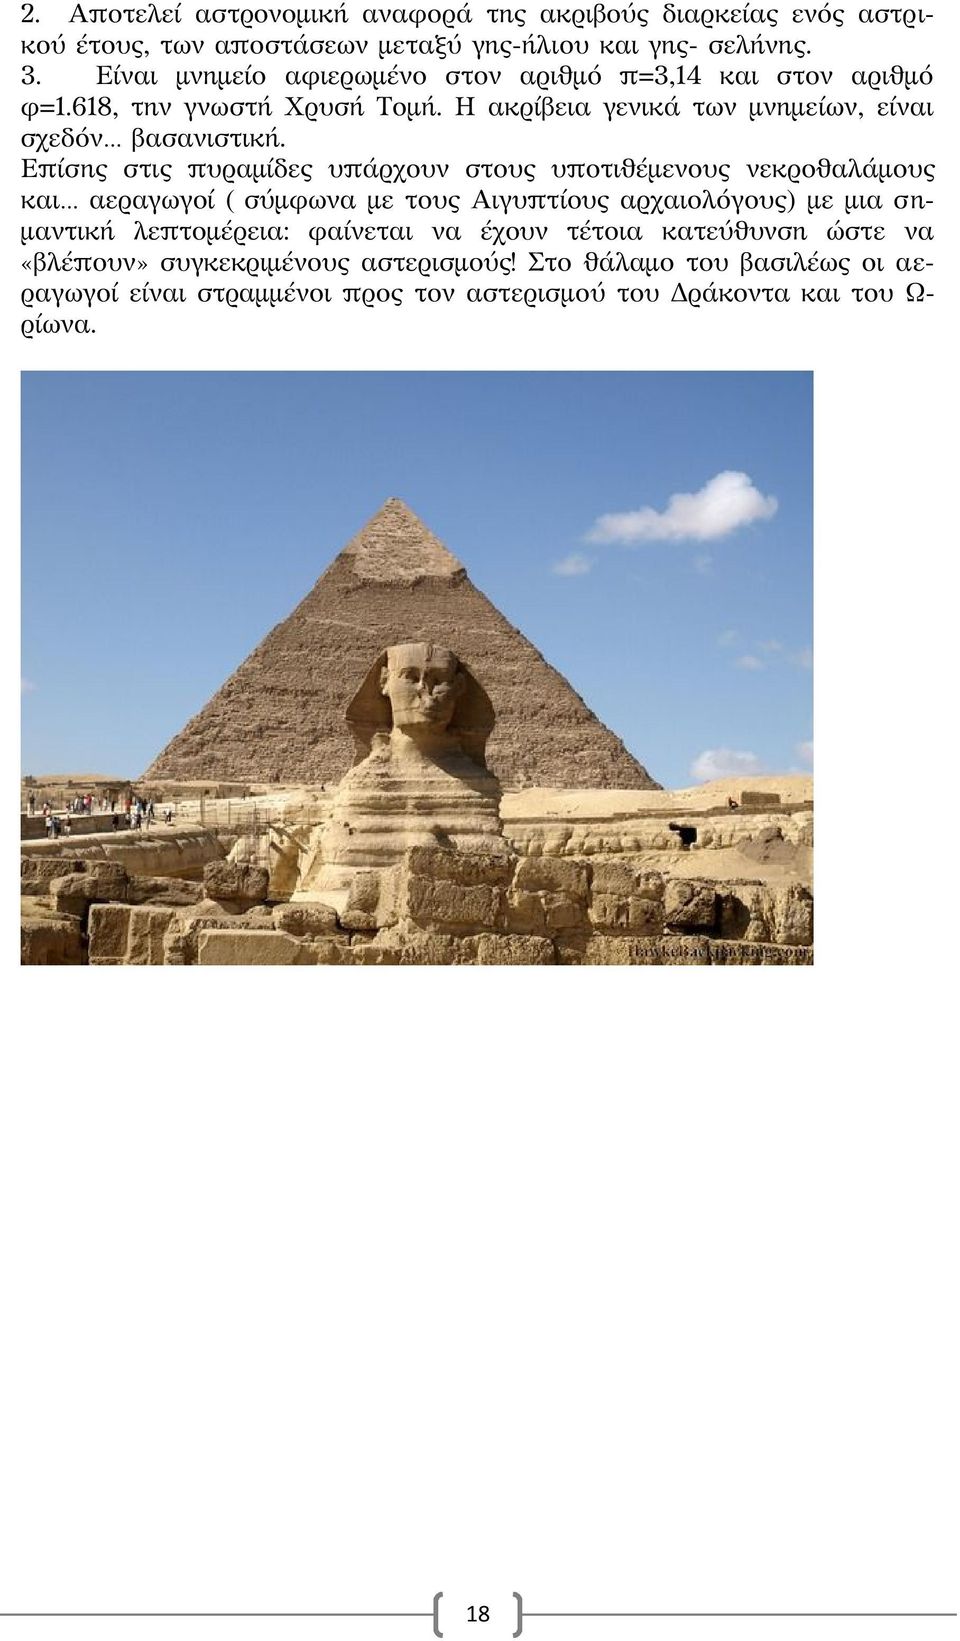 Επίσης στις πυραμίδες υπάρχουν στους υποτιθέμενους νεκροθαλάμους και αεραγωγοί ( σύμφωνα με τους Αιγυπτίους αρχαιολόγους) με μια σημαντική λεπτομέρεια: